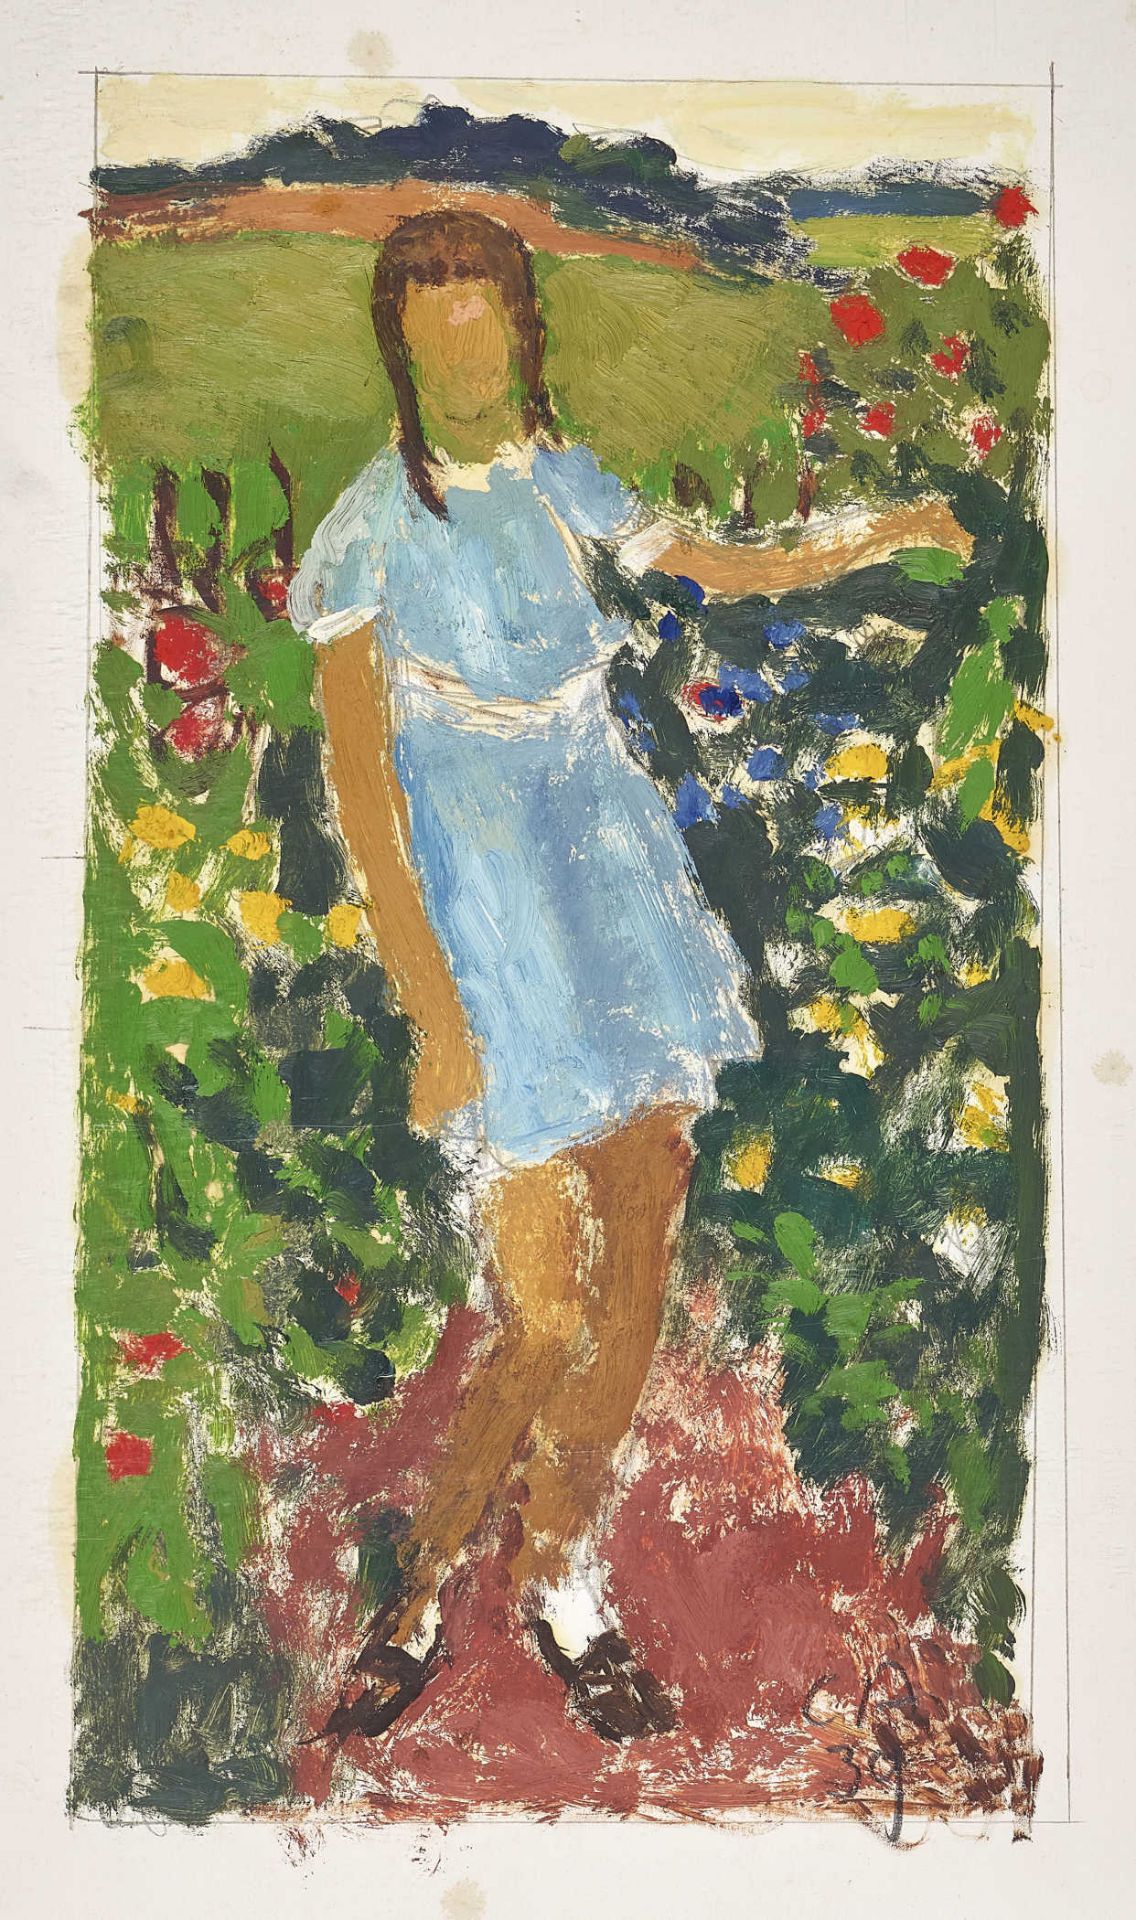 AMIET, CUNOSolothurn 1868 - 1961 OschwandMädchen im Blumengarten.Öl auf Papier,mgr. u. dat. (19)39